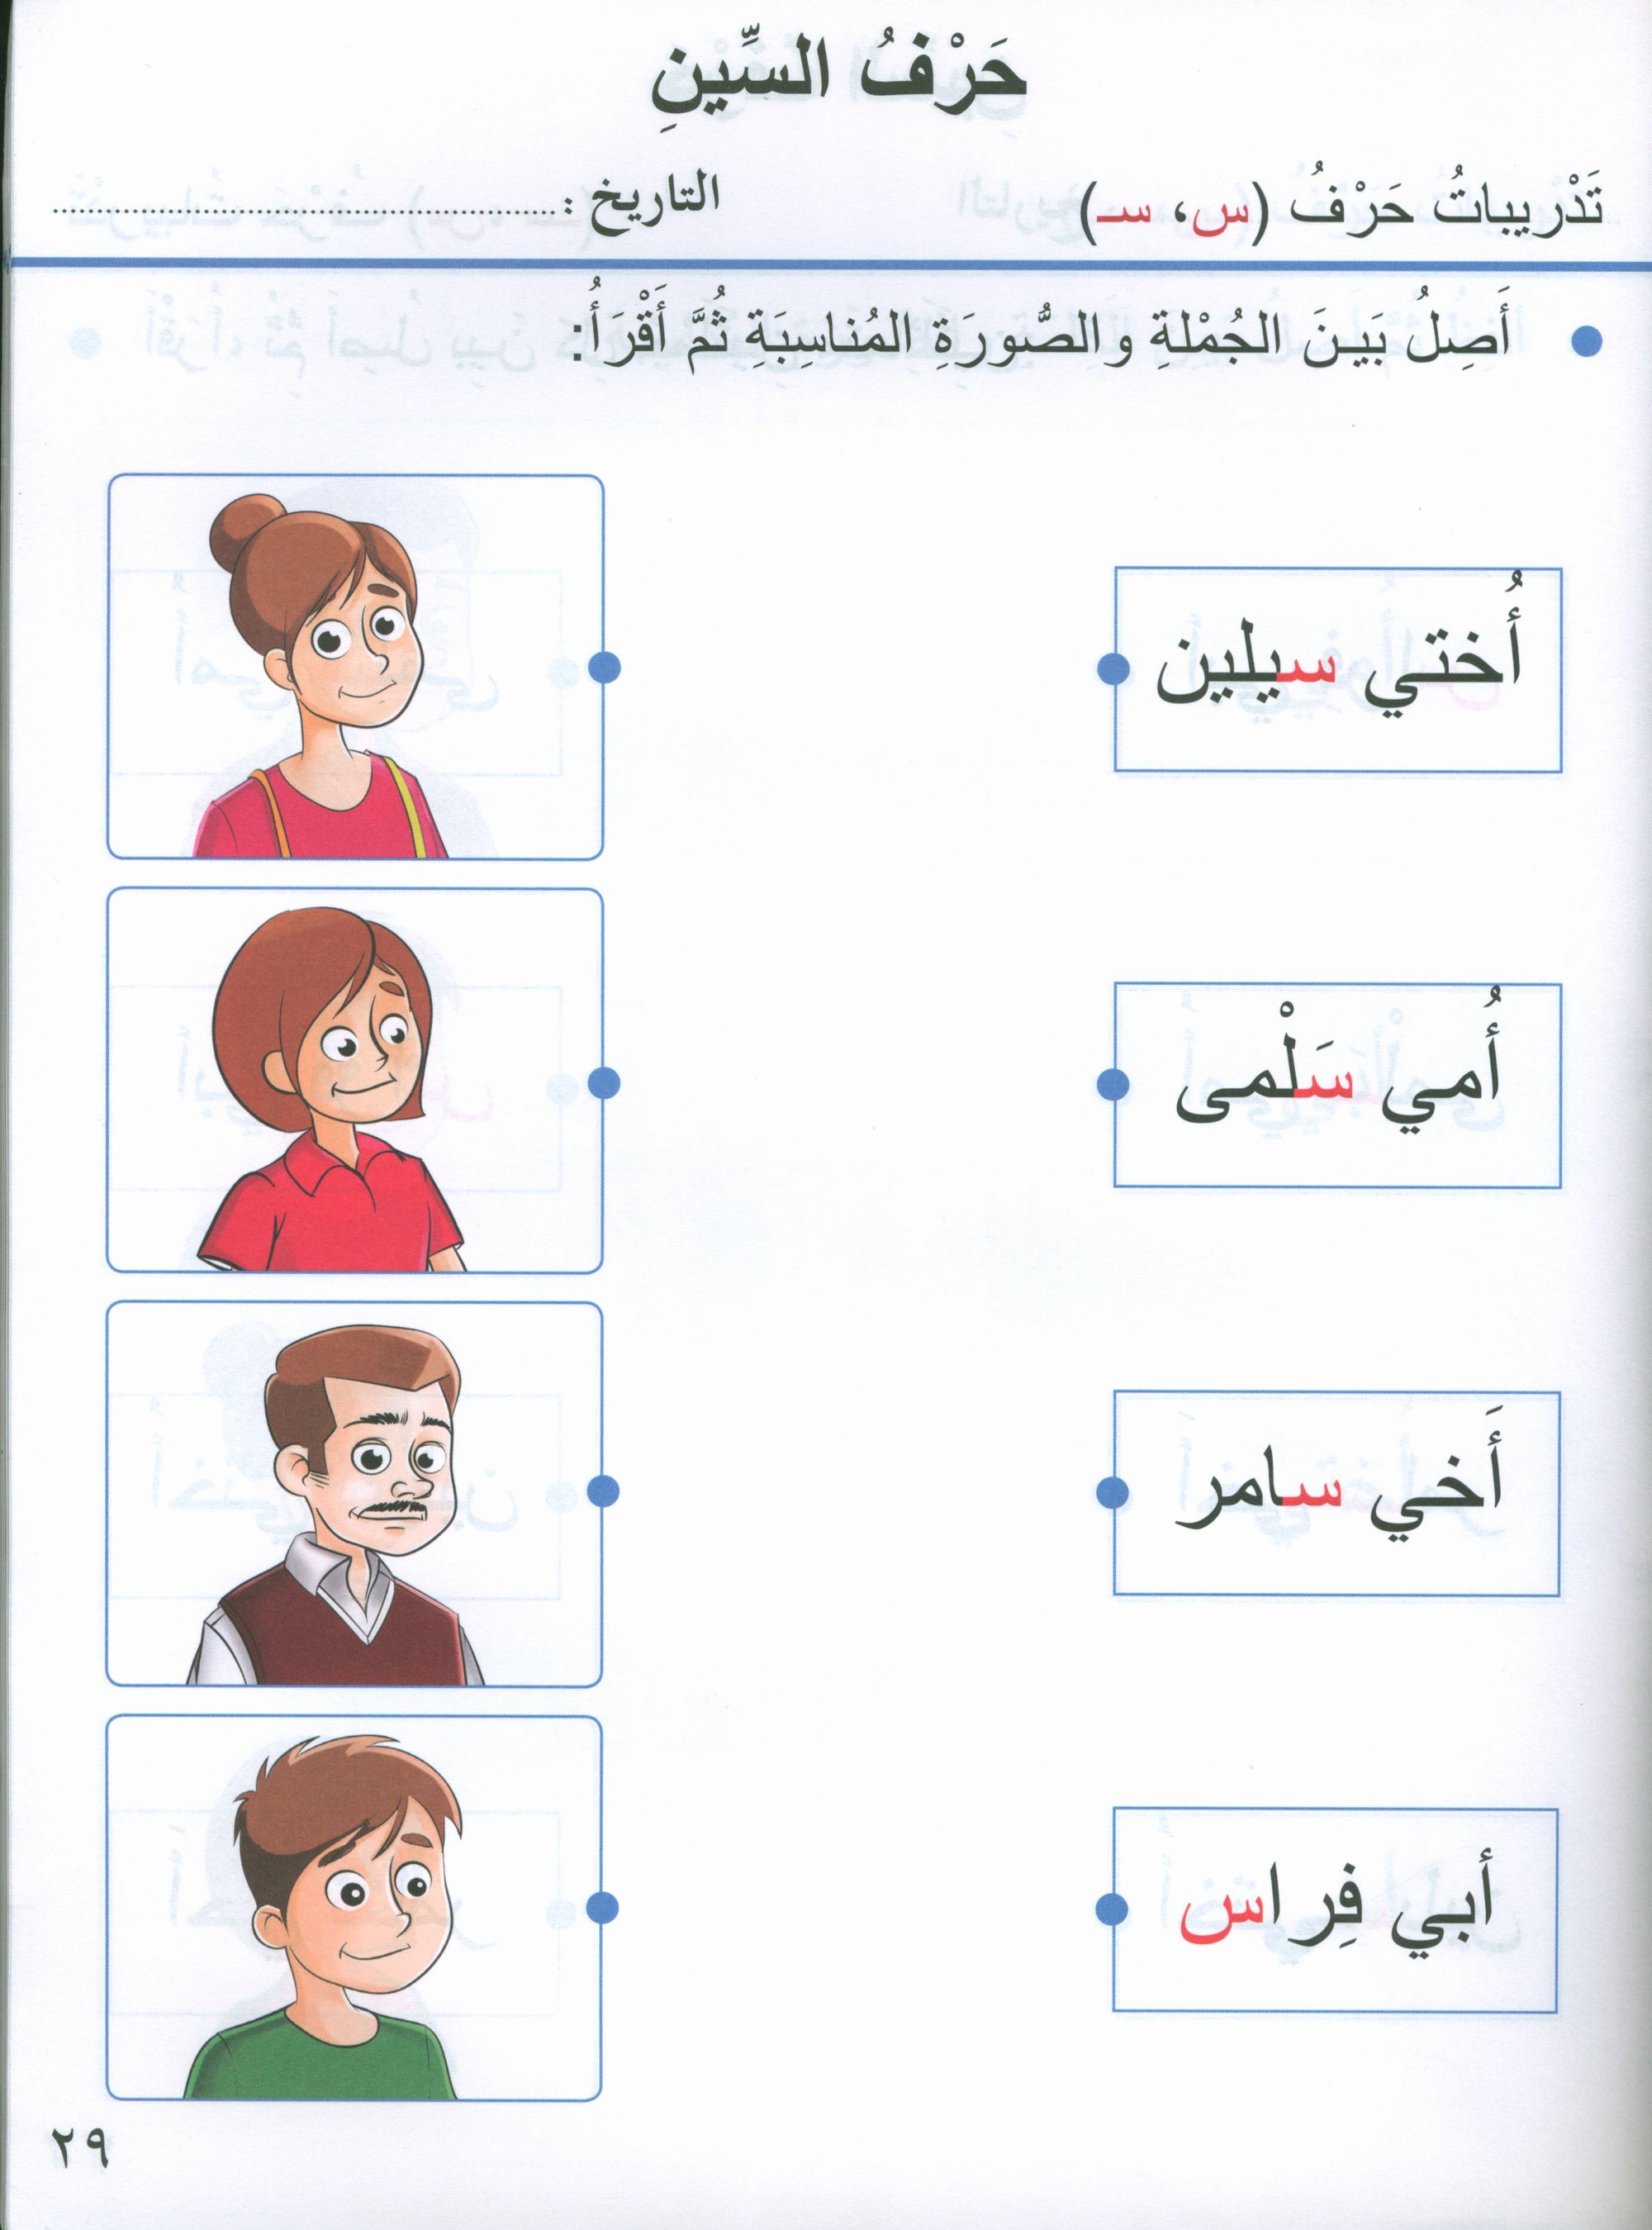 Our Arabic Language Textbook KG 1 لغتنا العربية